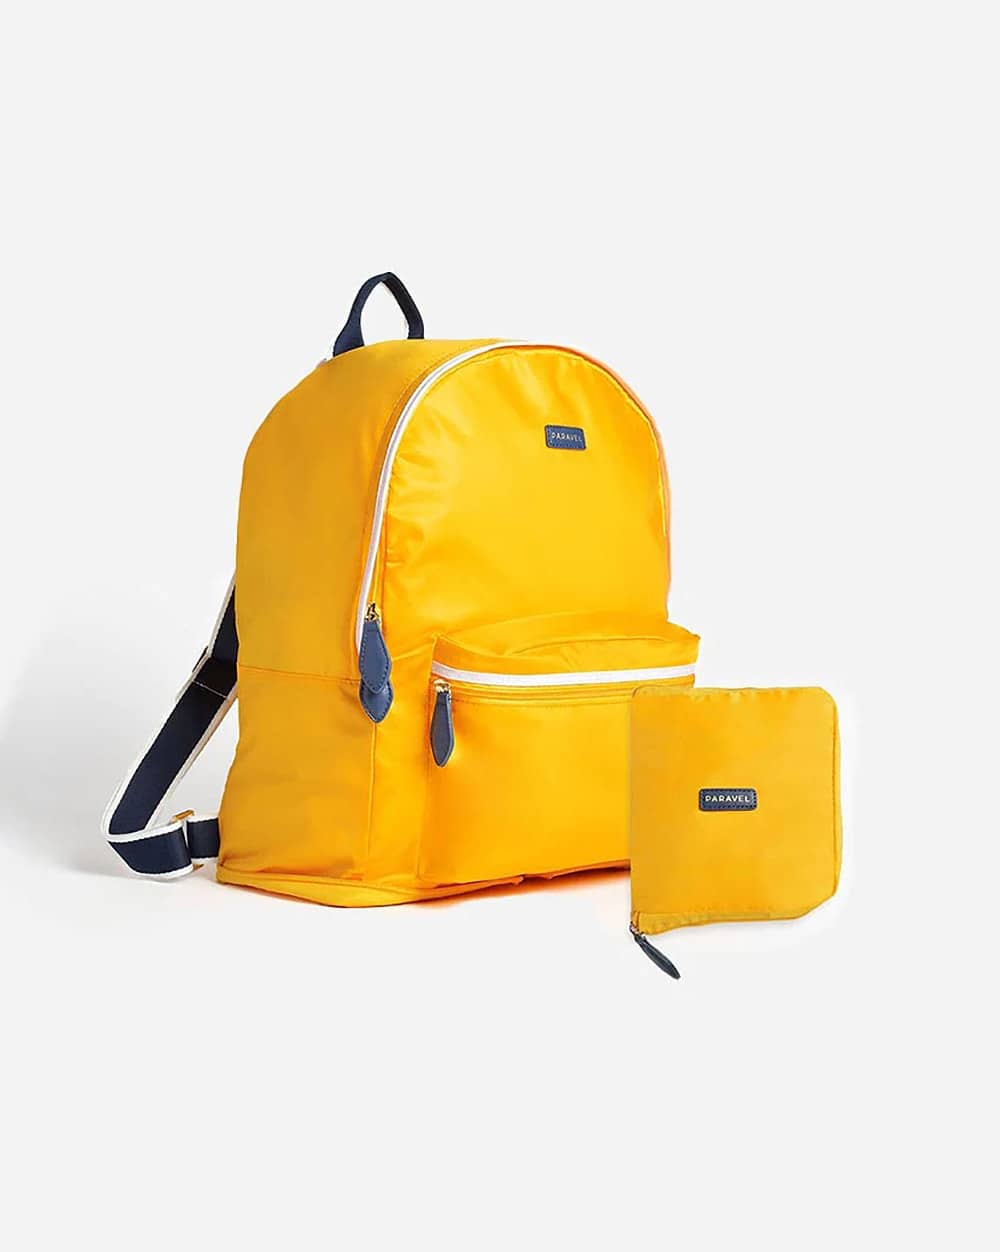 Lightweight backpacks